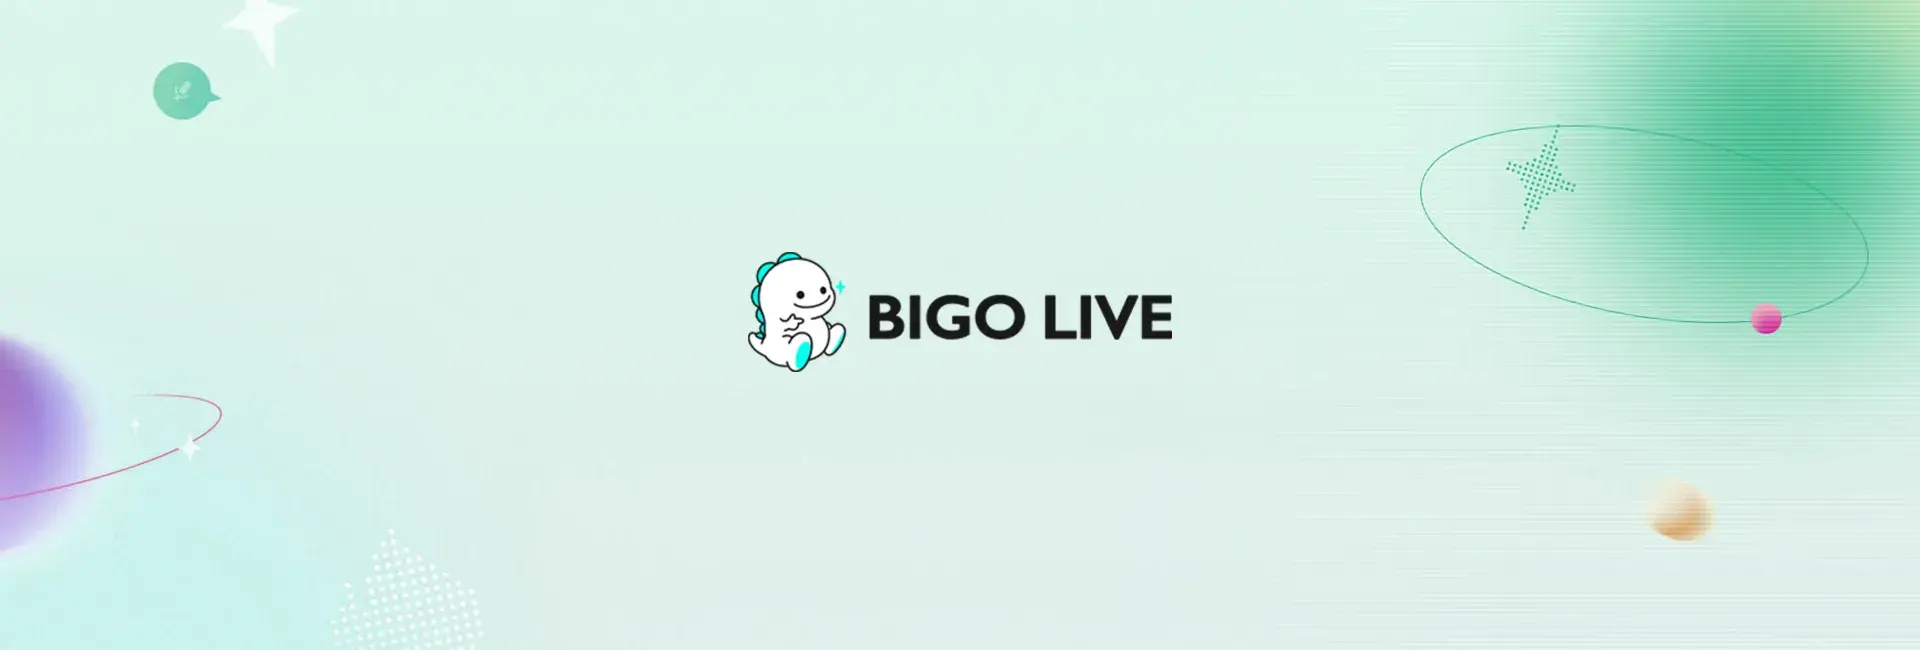 Bigo Live - 26300 Diamonds (Global)	